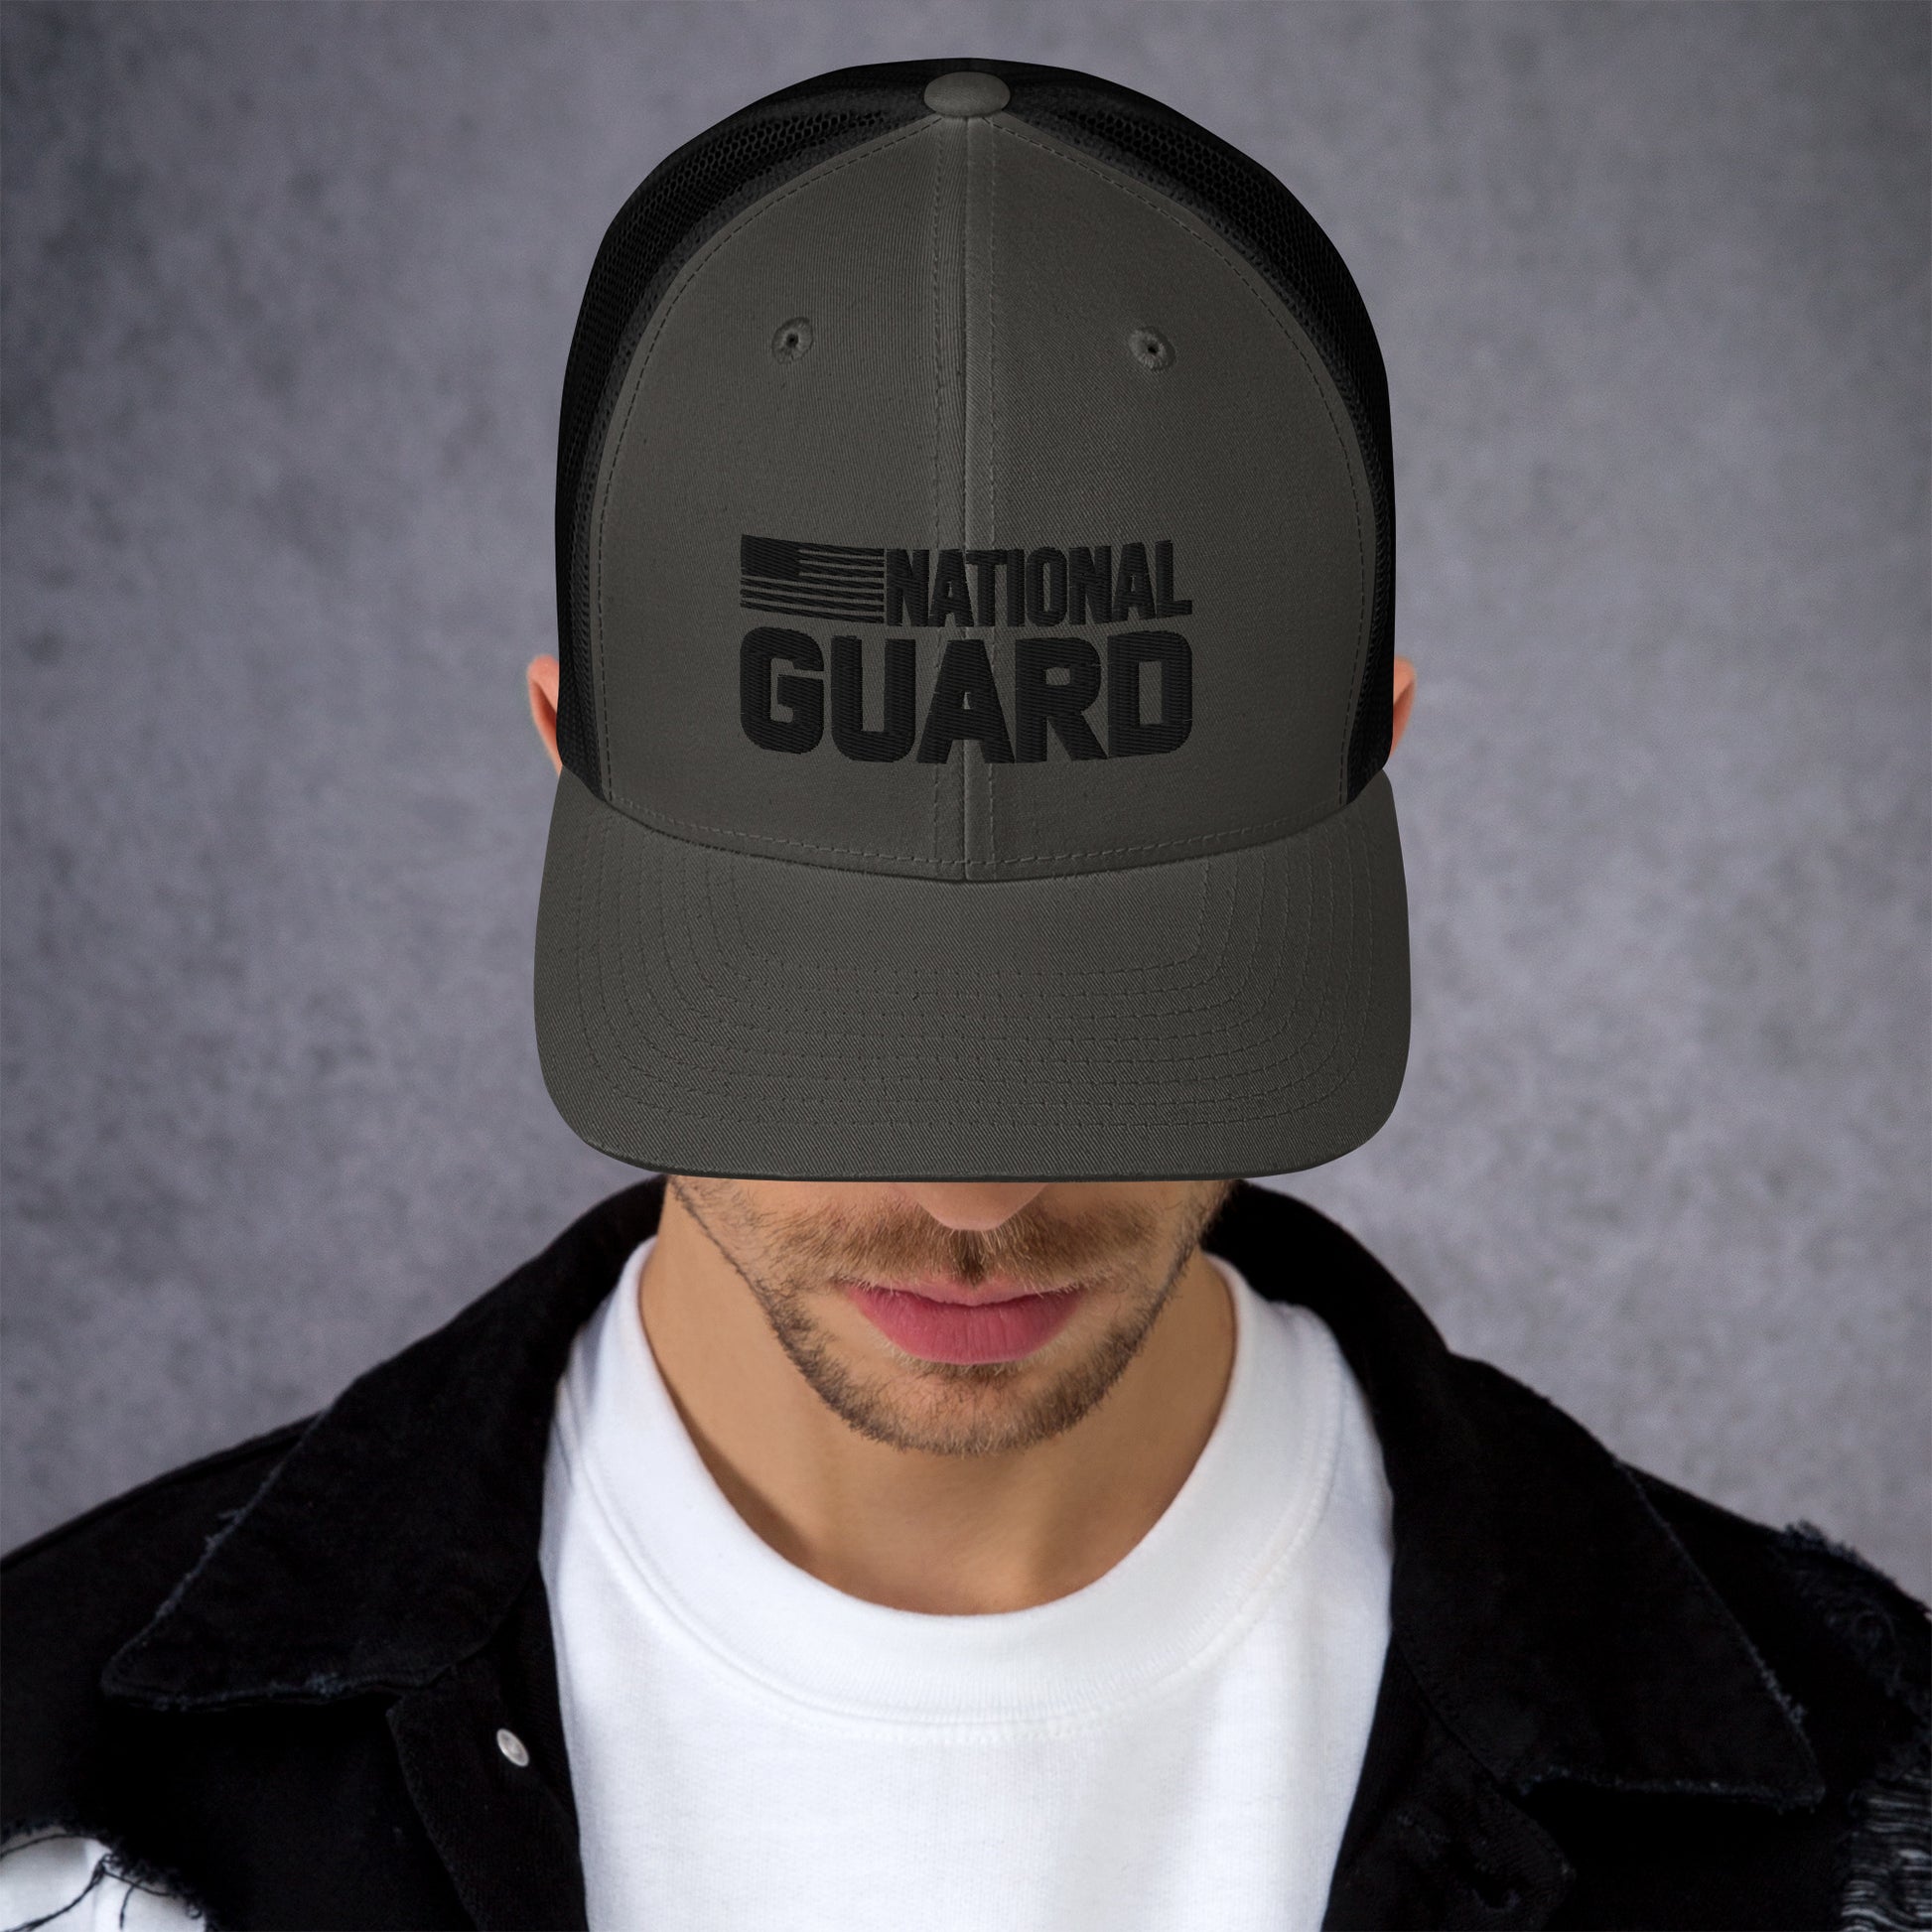 Trucker Cap - National Guard - FAFO Sportswear